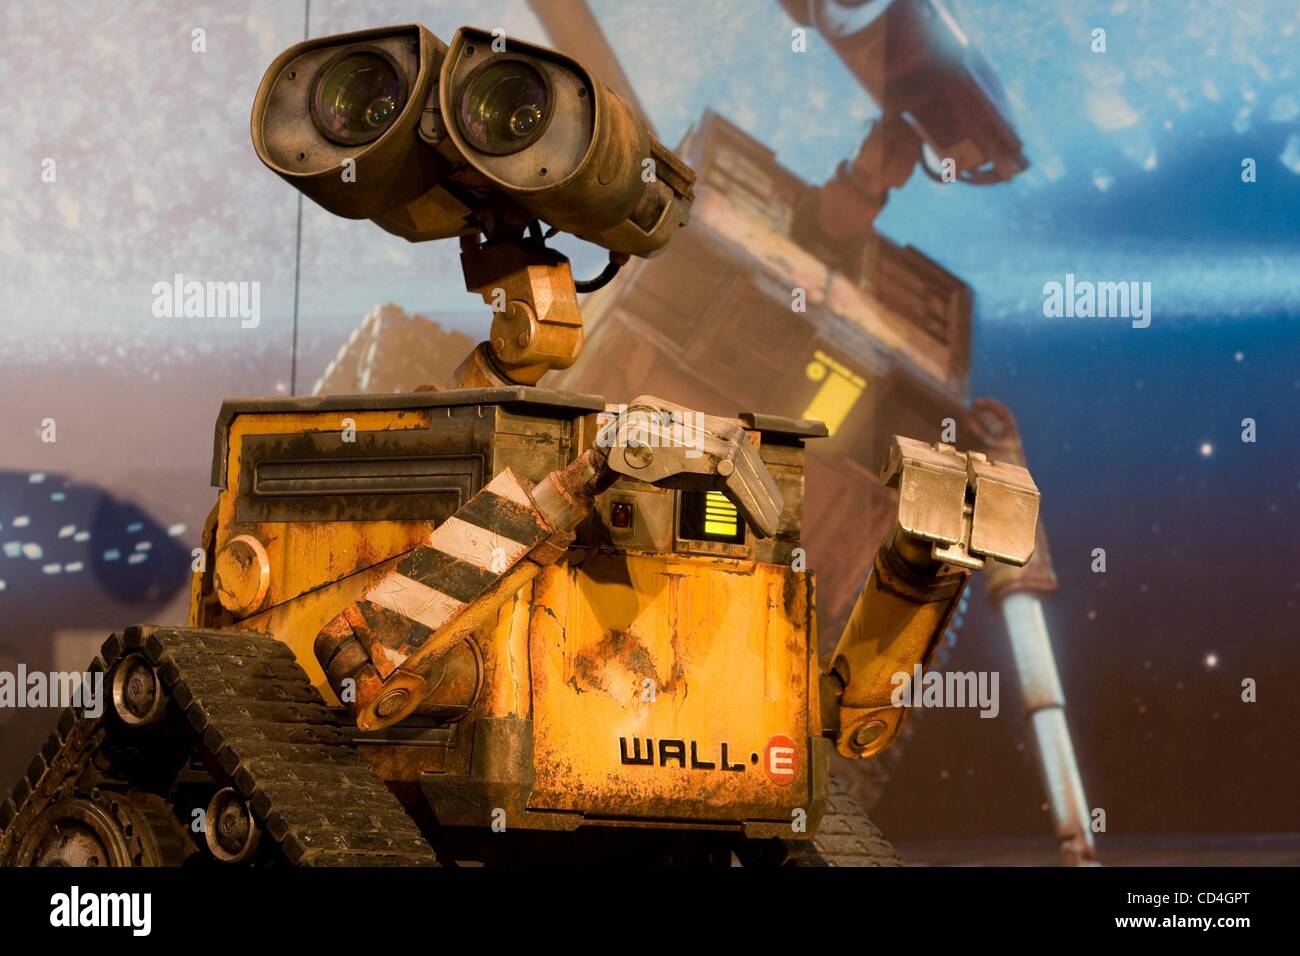 Ottobre 08, 2008 - Tokyo, Giappone - Il robot "Wall-E' appare sul palco durante la conferenza stampa per il nuovo filmato di animazione "Wall-E' tenuto presso il Tokyo Midtown. Il filmato viene aperto in giapponese teatri il 5 dicembre 2008. (Credito Immagine: Â© Christopher Jue/ZUMA Press) Foto Stock